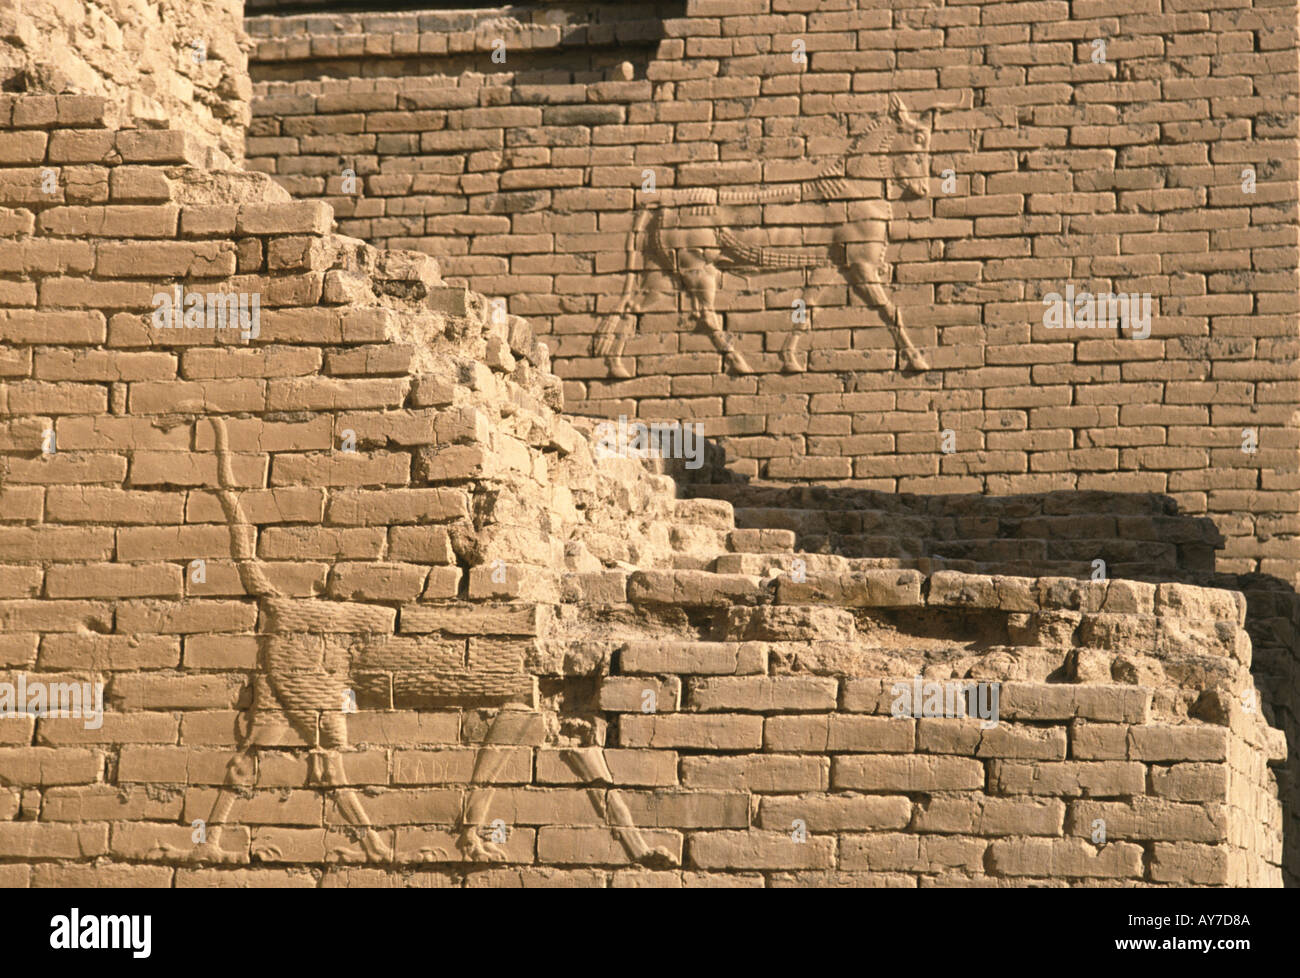 Tierfiguren in Flachrelief auf Brick Wand in der antiken Stadt Babylon Irak Stockfoto